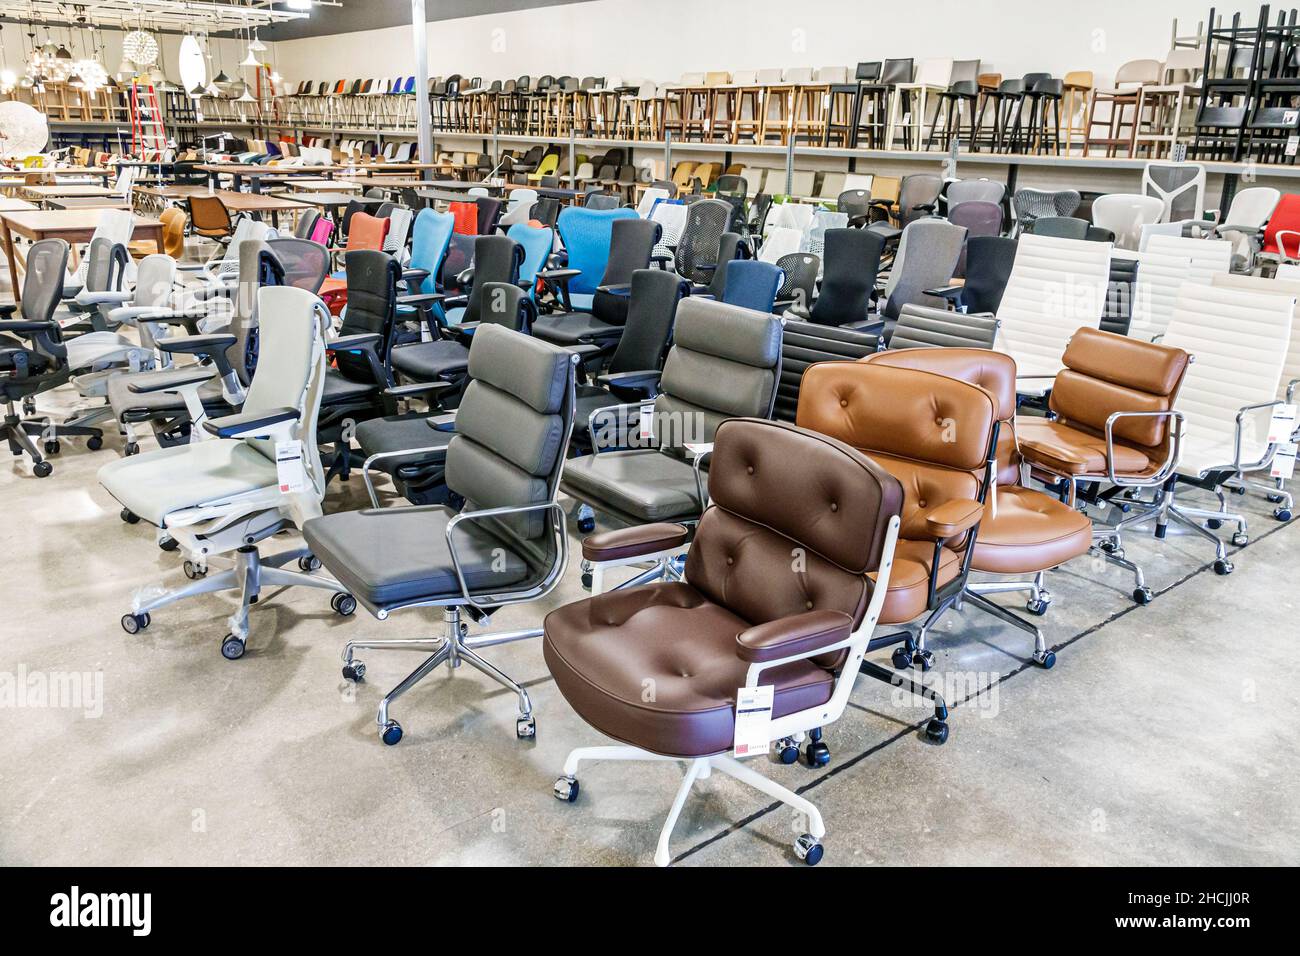 Vero Beach Florida Outlets magasin d'usine magasins d'usine magasins d'usine Design à portée de main meubles à l'intérieur de la salle d'exposition exposition exposition vente chaises de bureau Banque D'Images